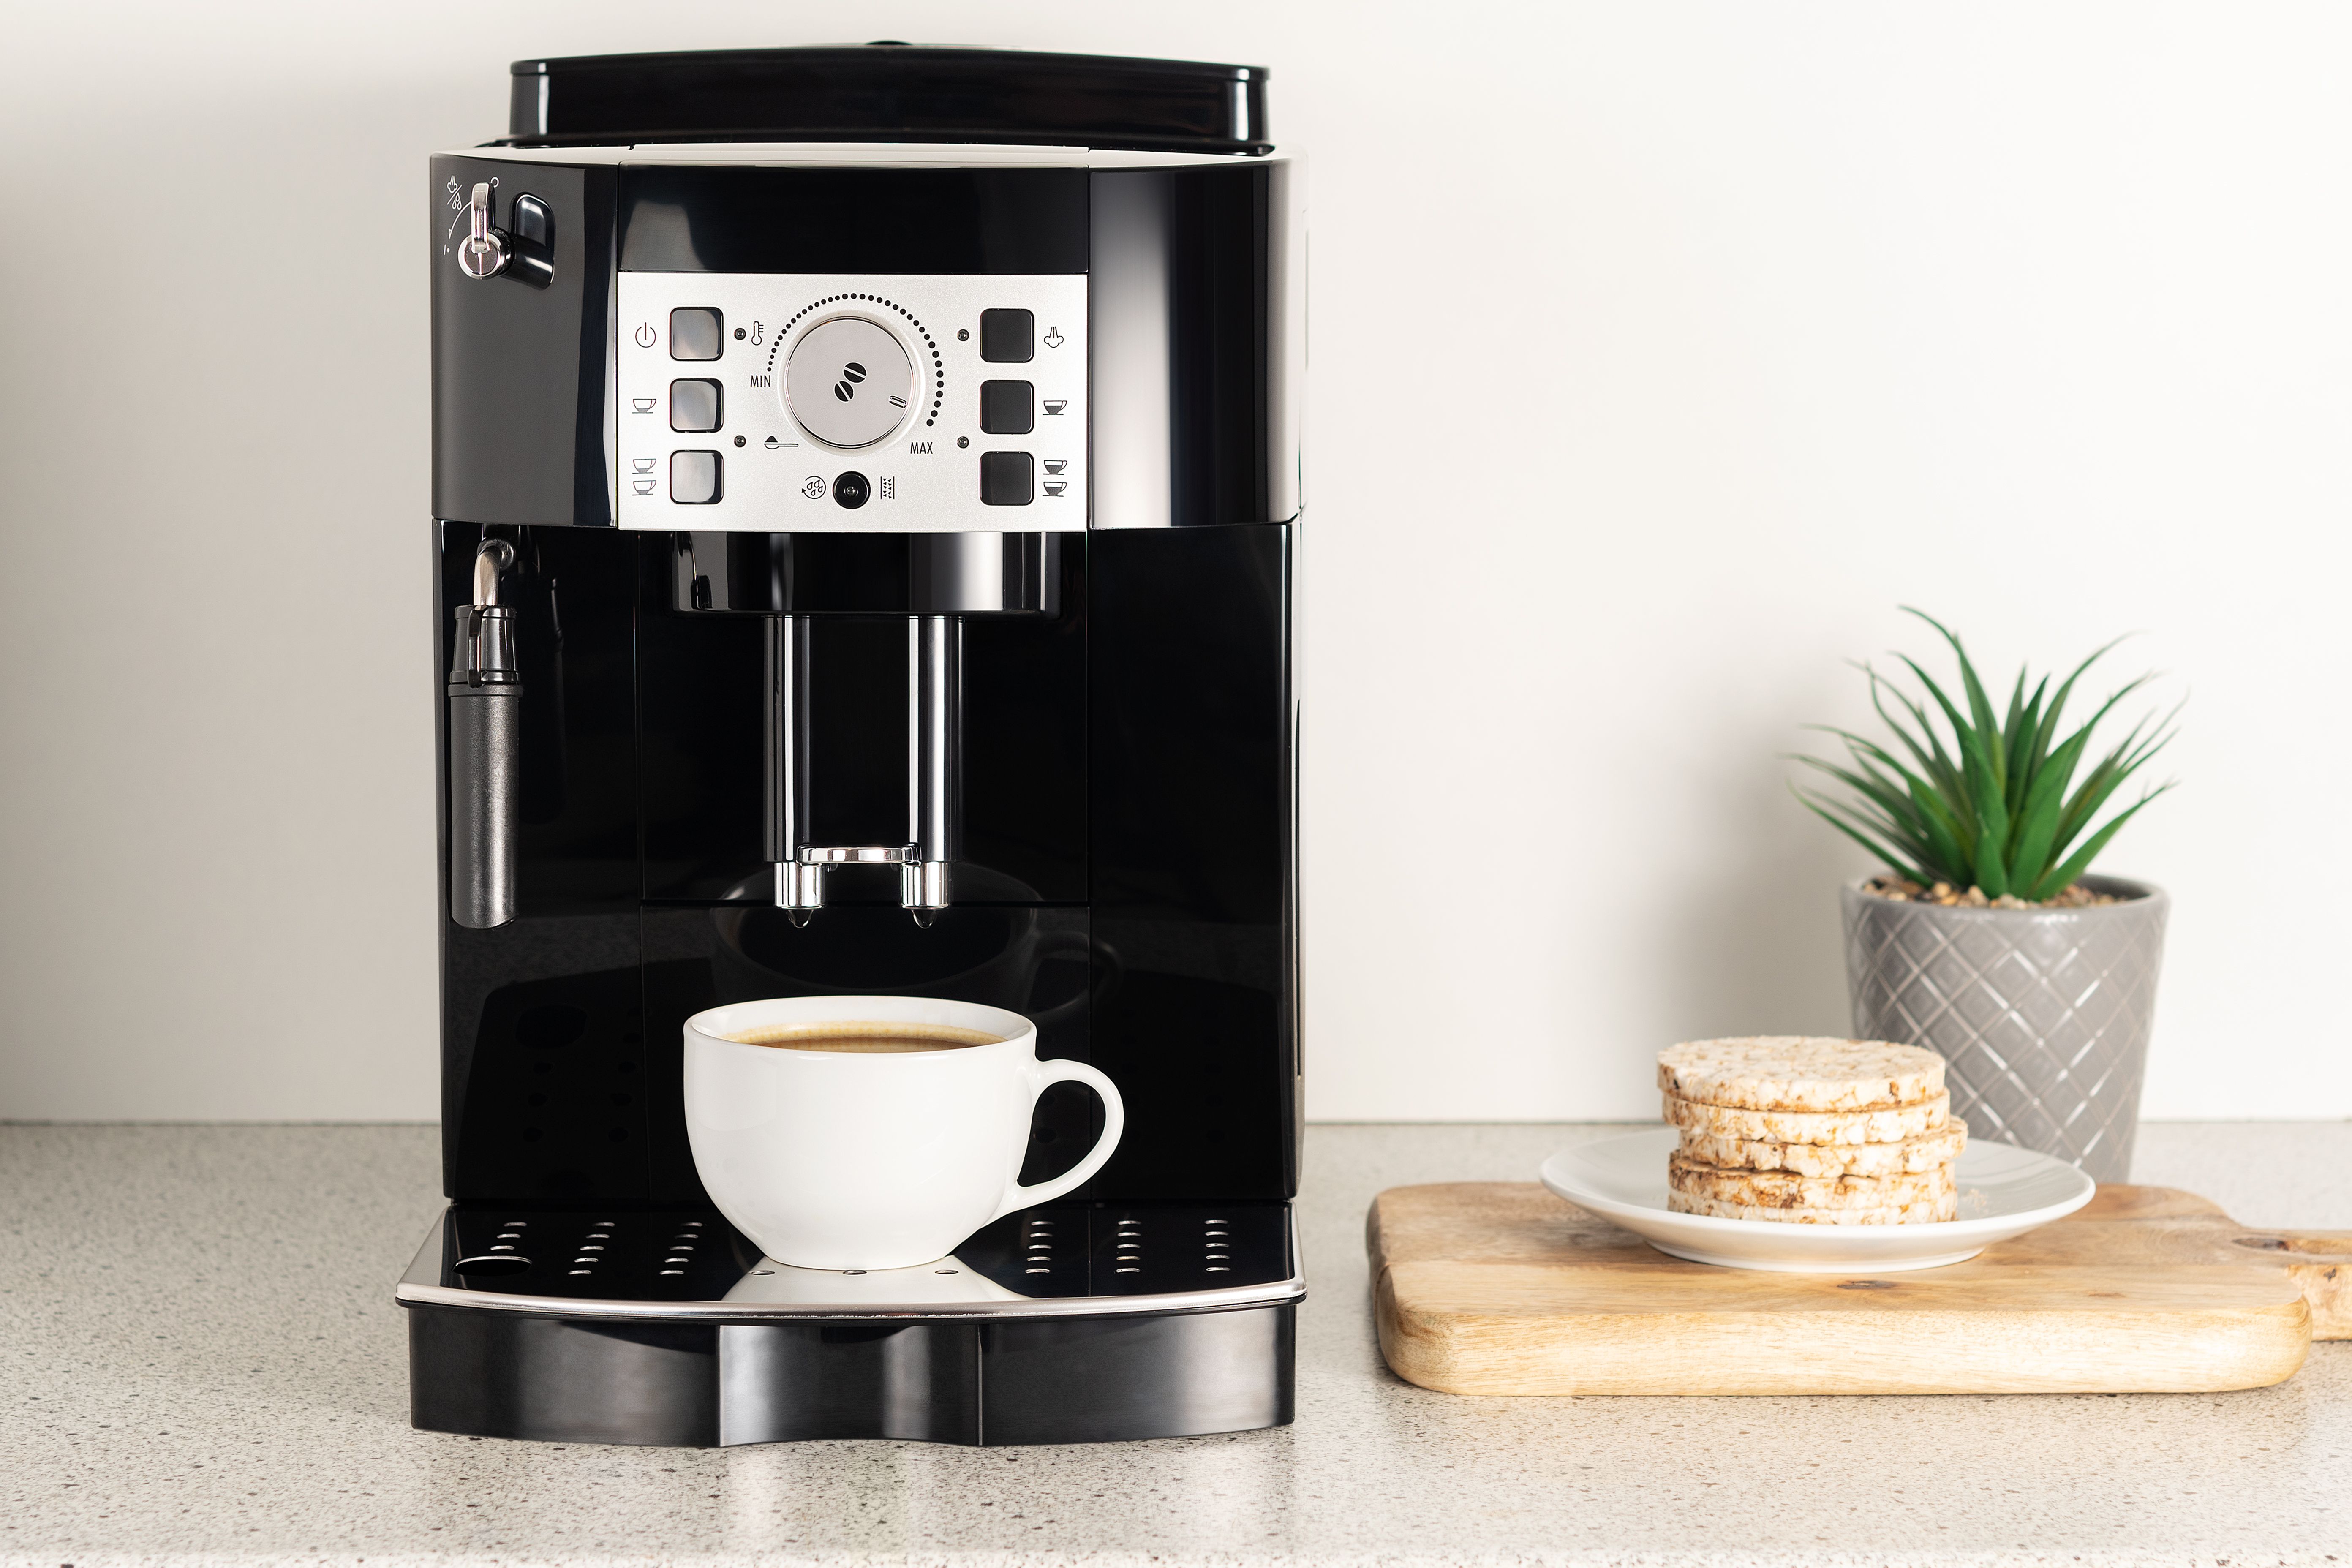 Meilleure machine à café grain 2021 - Blog sur le café, histoires